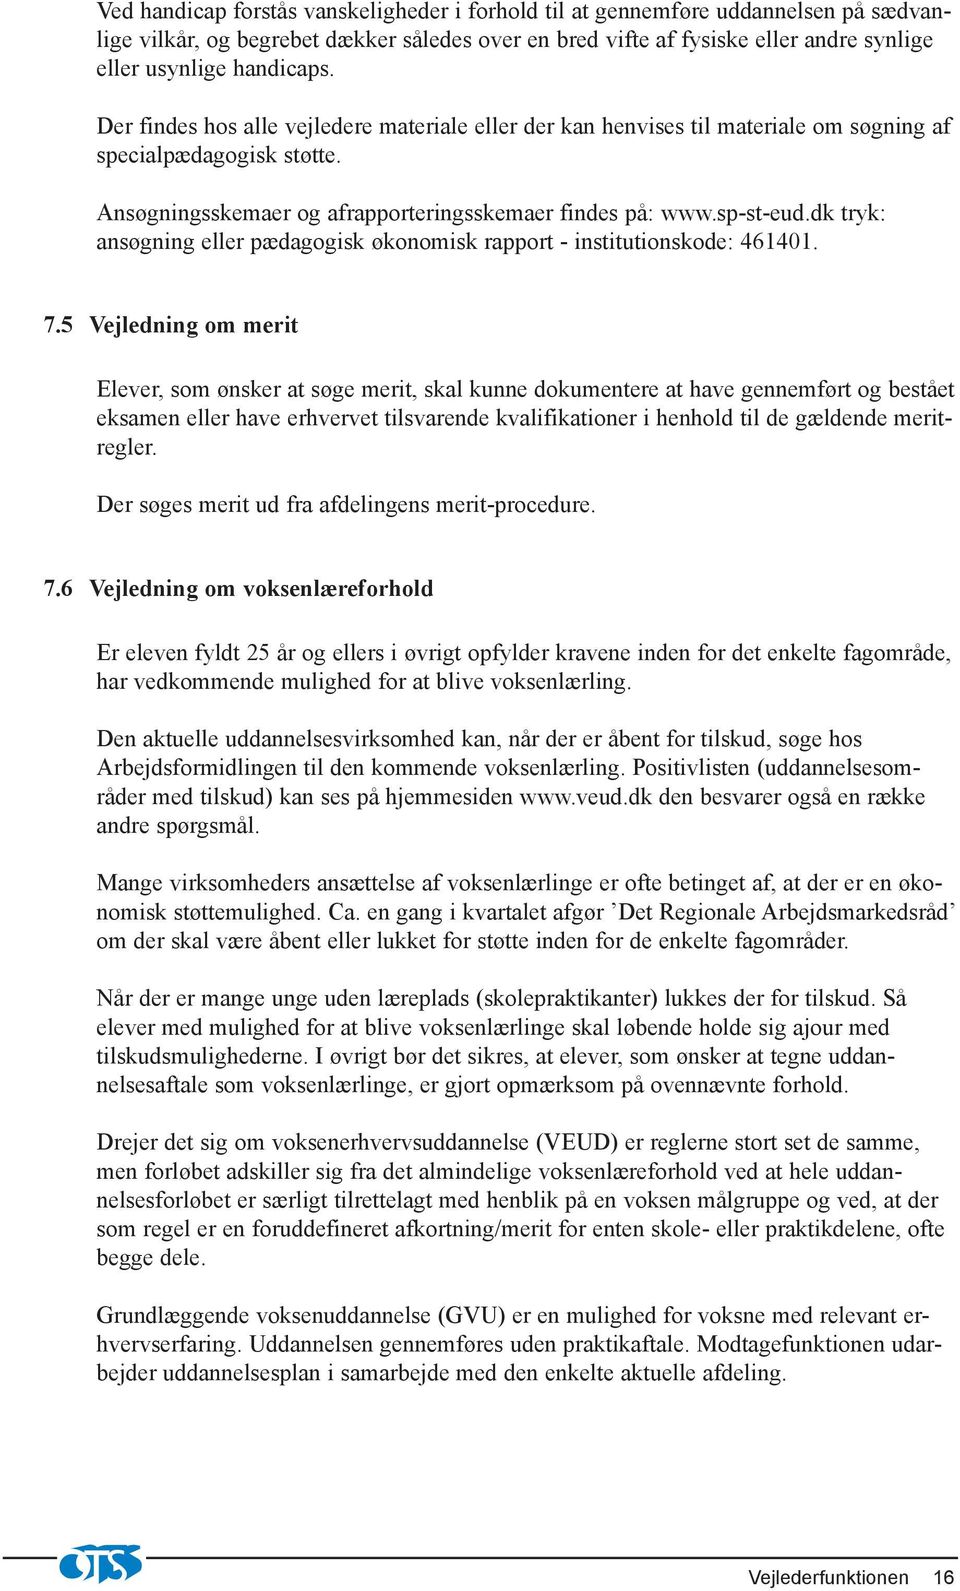 dk tryk: ansøgning eller pædagogisk økonomisk rapport - institutionskode: 461401. 7.